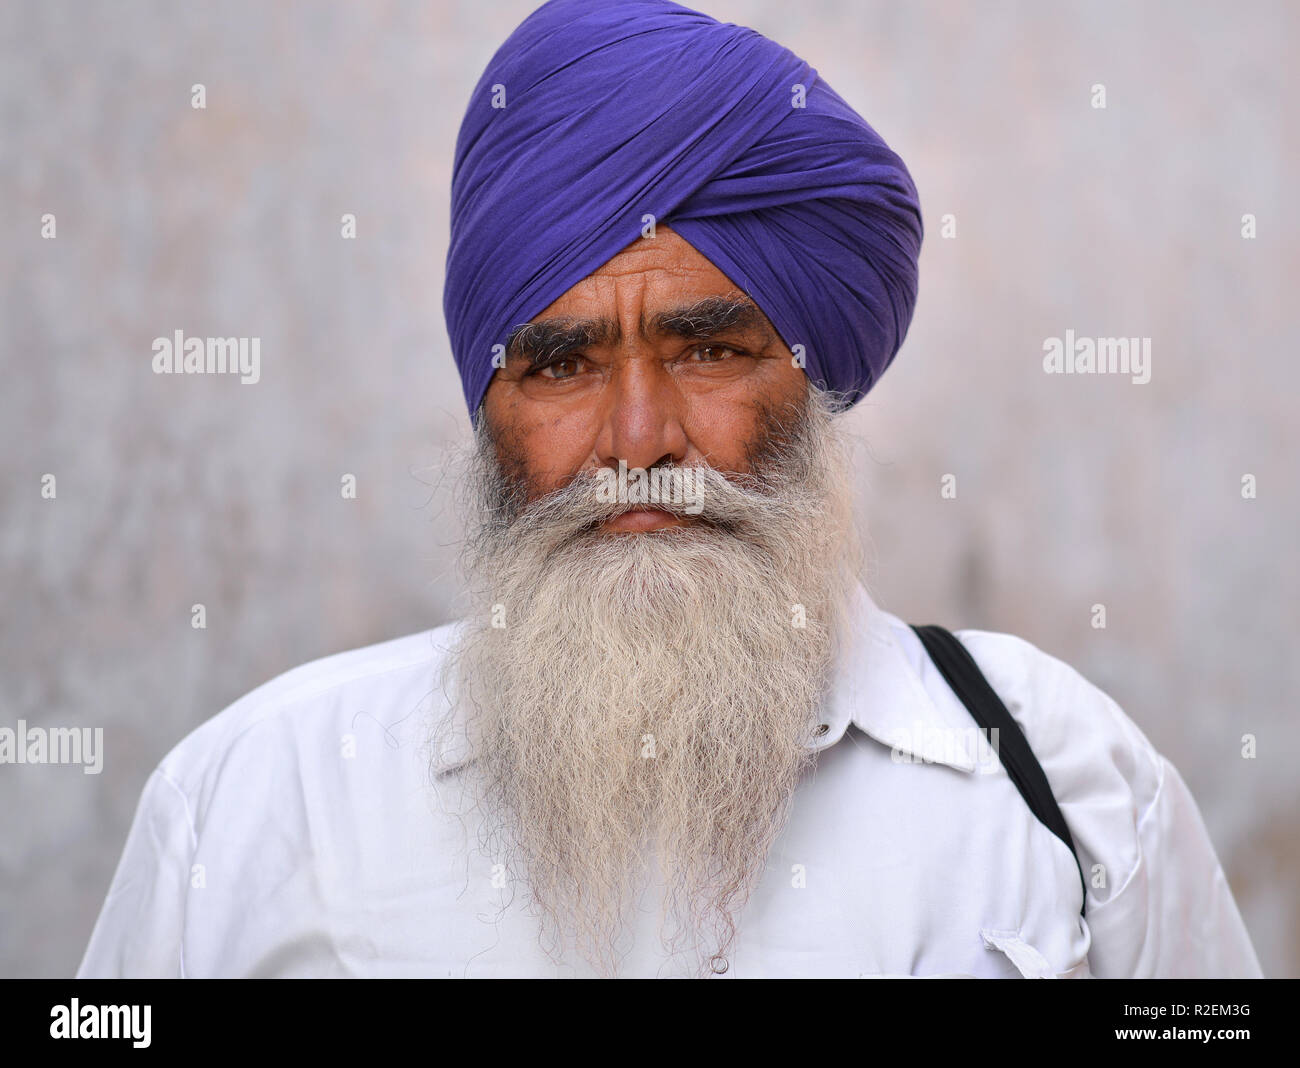 Punjabi man hi-res stock photography and images - Alamy